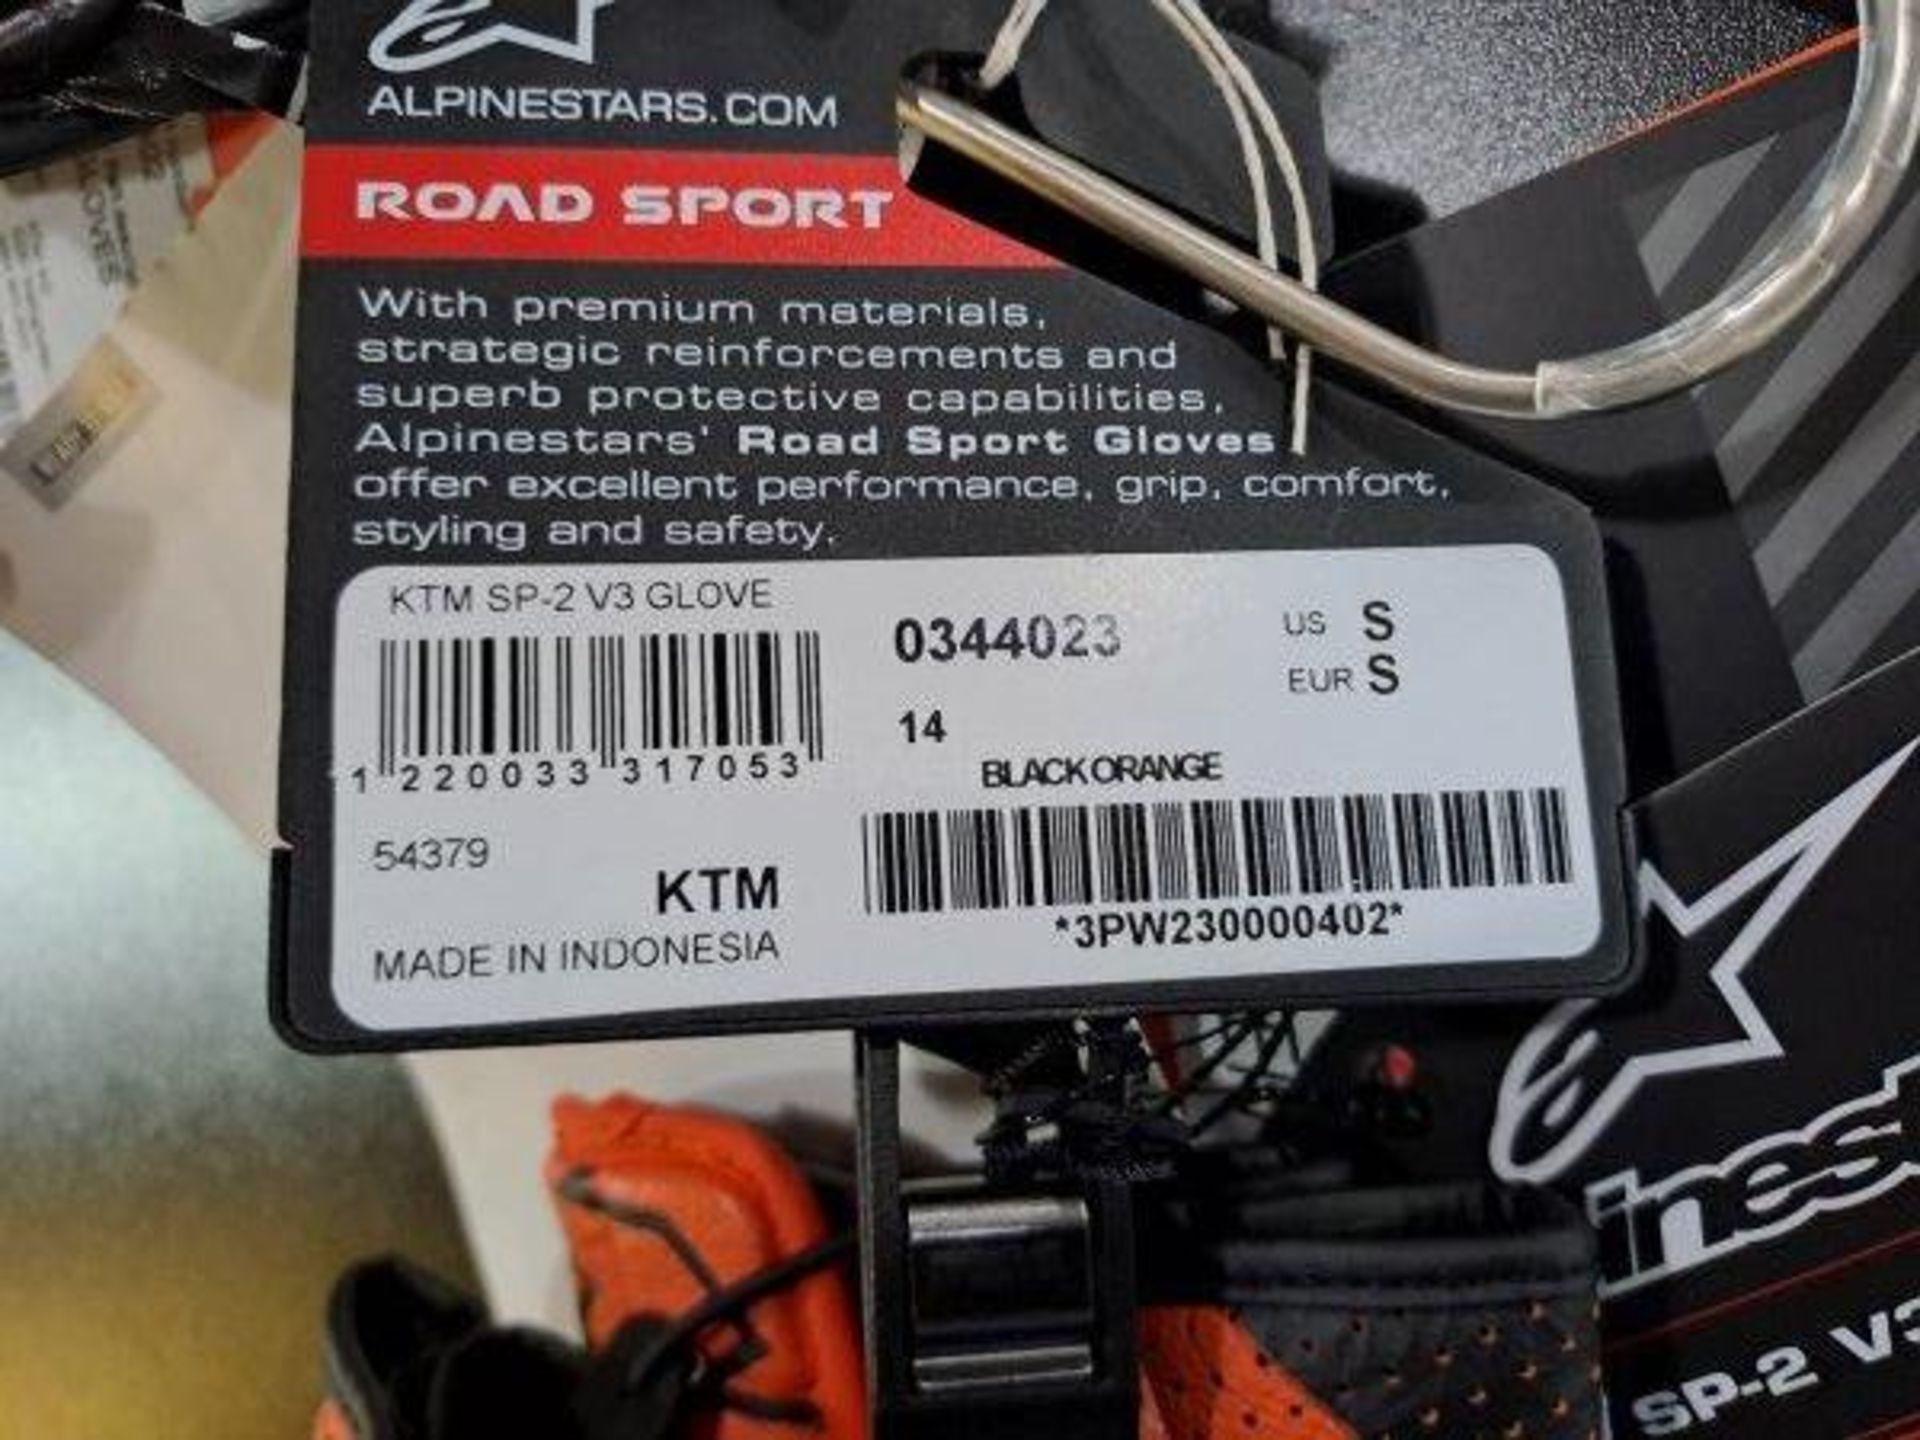 KTM SP-2 V3 Glove and Ultra WP Glove Motorbike Gloves - Image 3 of 7